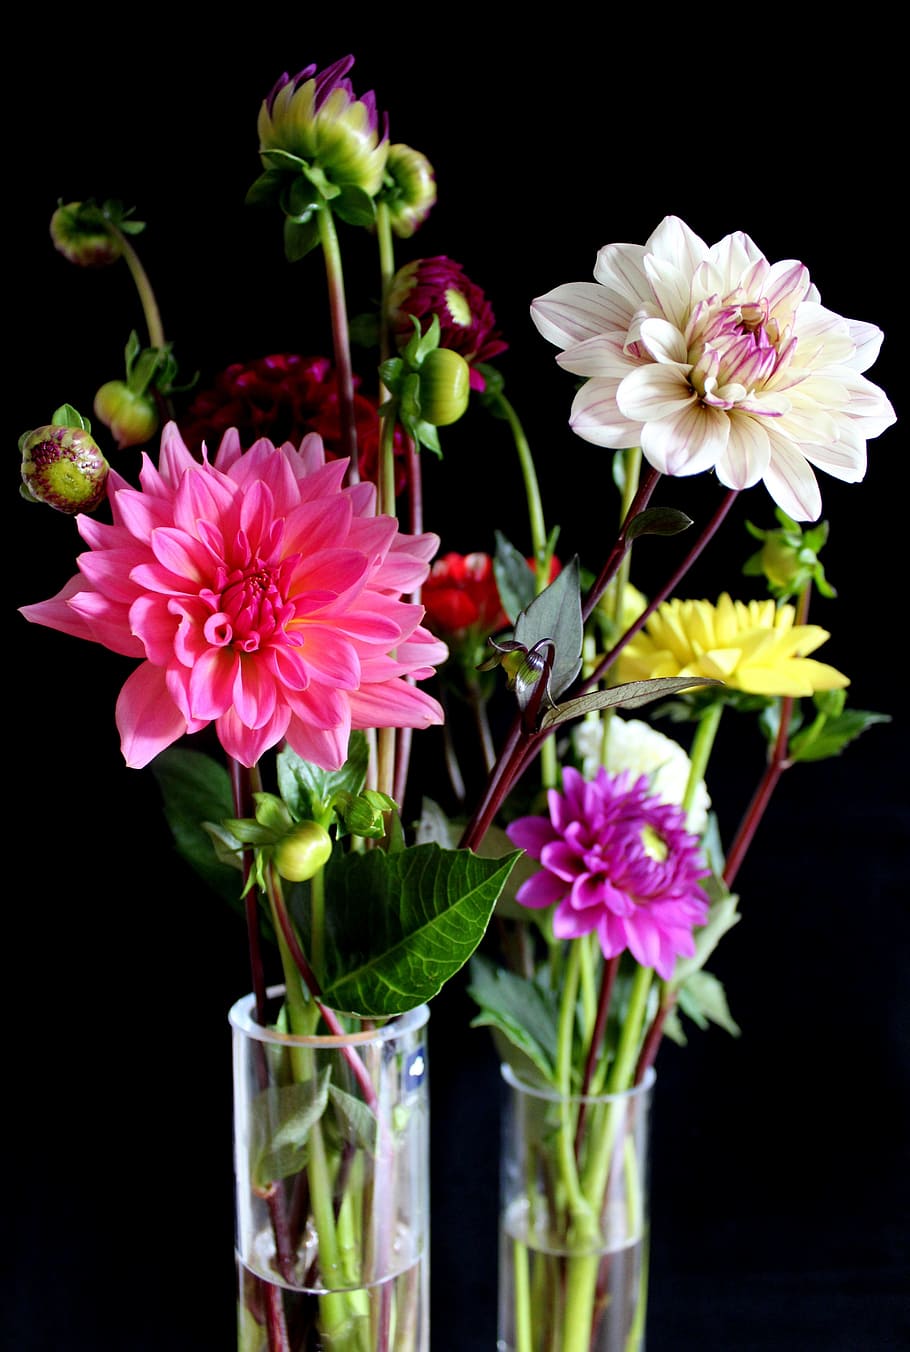 dahlias, flowers, vase, dahlia garden, blossom, bloom, late summer, garden, dahlia flower, garden plant